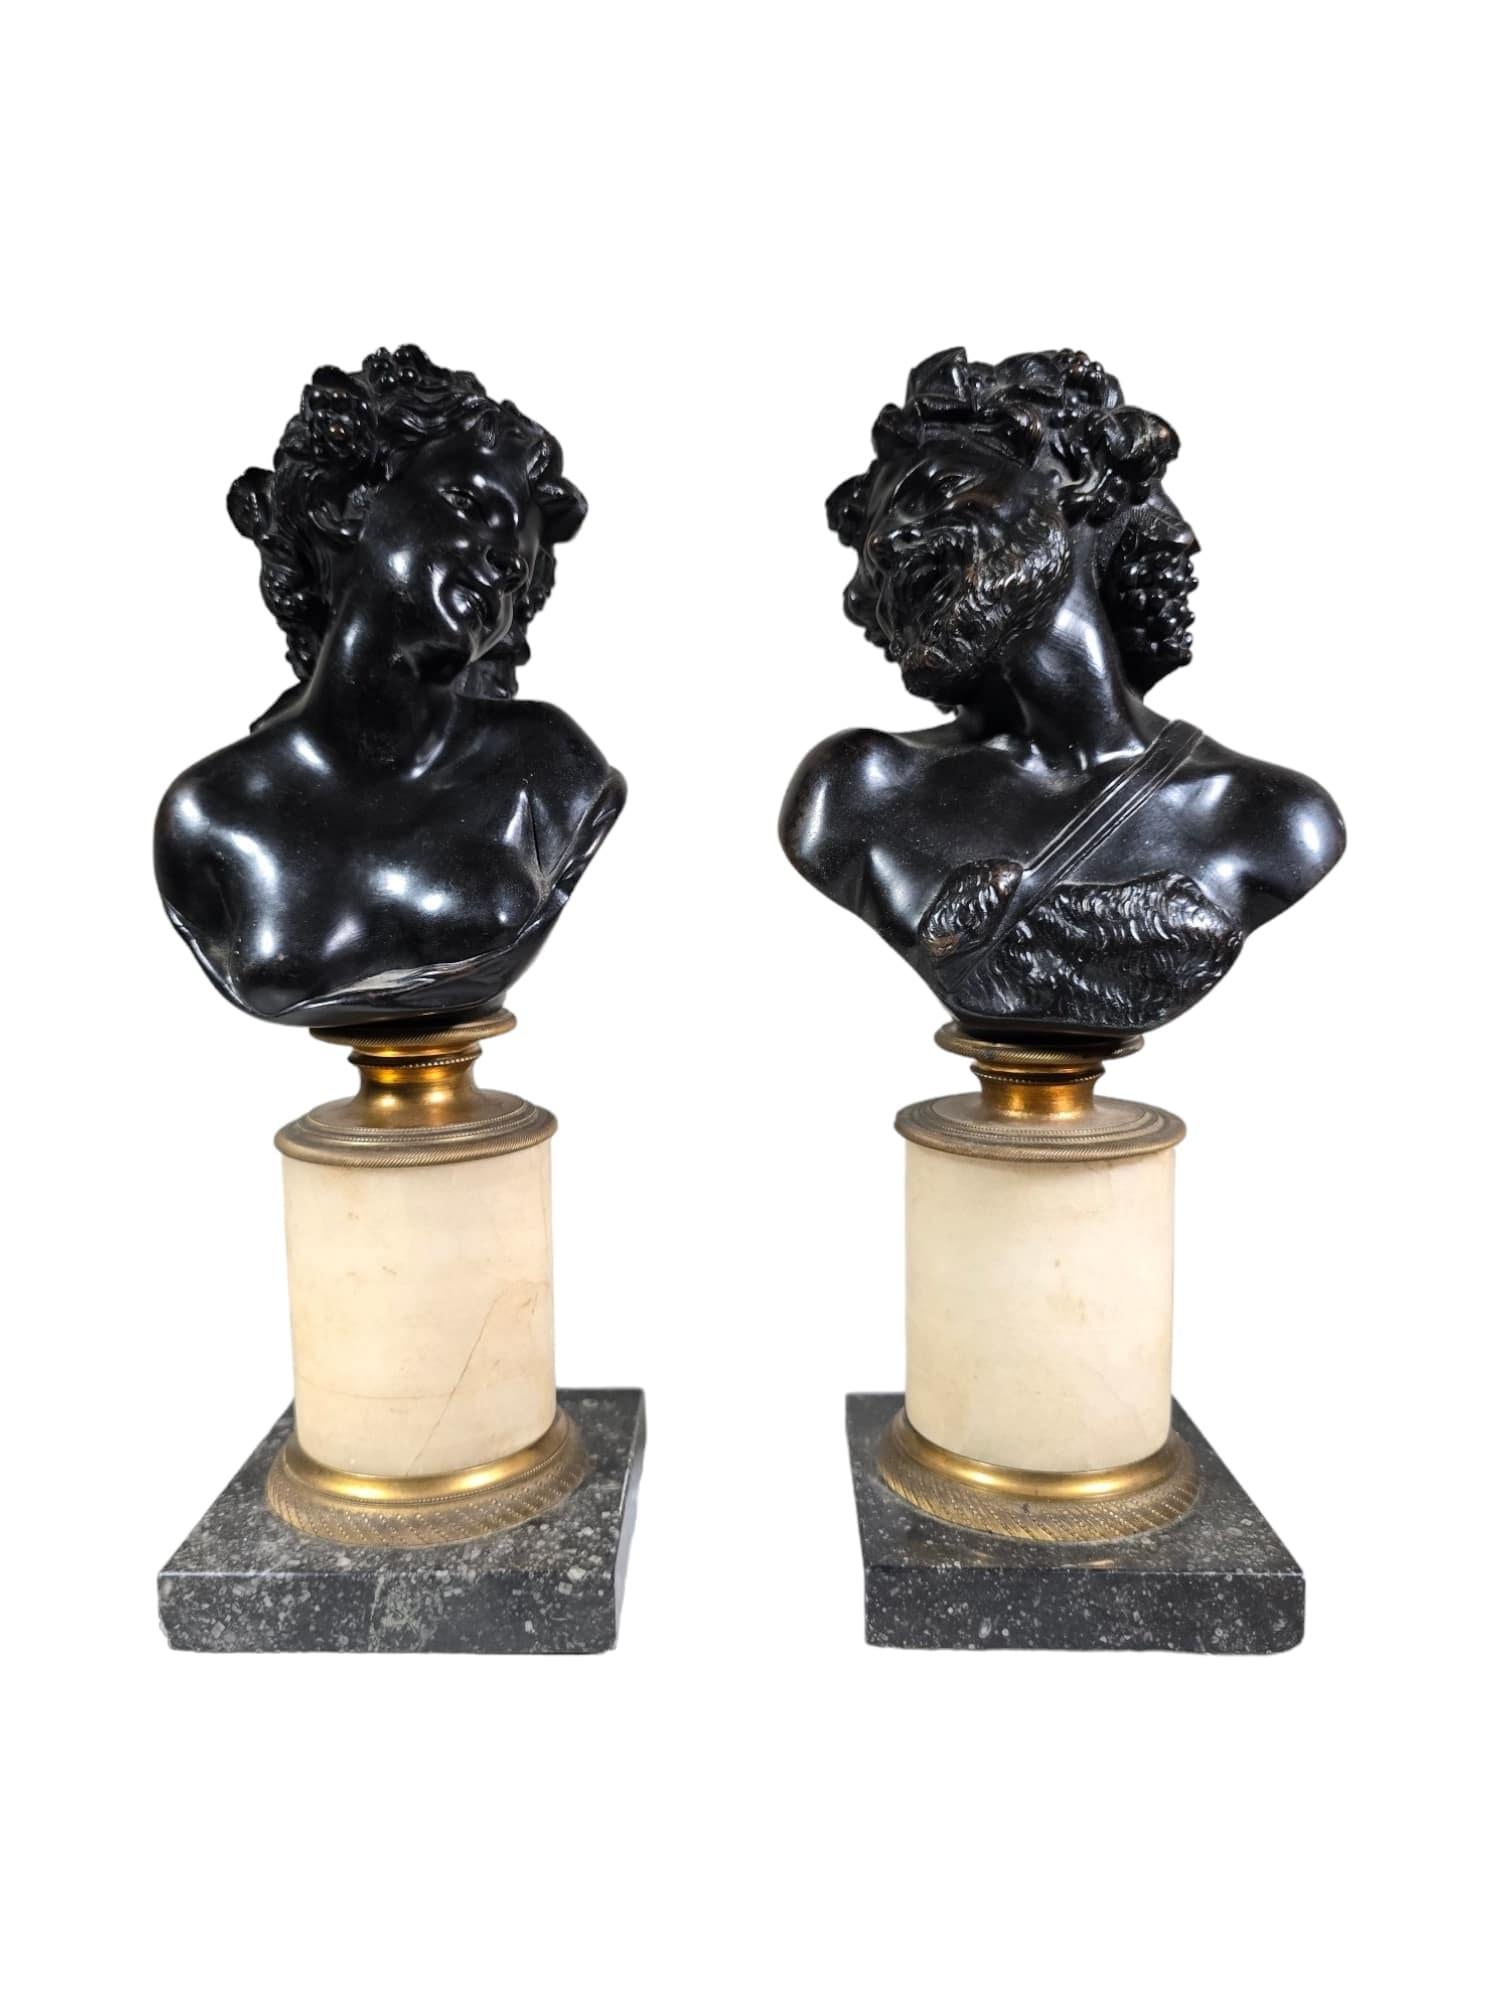 Cette exquise paire de bustes anciens en bronze italien représente l'allure intemporelle de l'époque du Grand Tour, avec des représentations de Dionysos et d'Ariane inspirées par le célèbre sculpteur Clodion. Datant du XIXe siècle, ces bustes